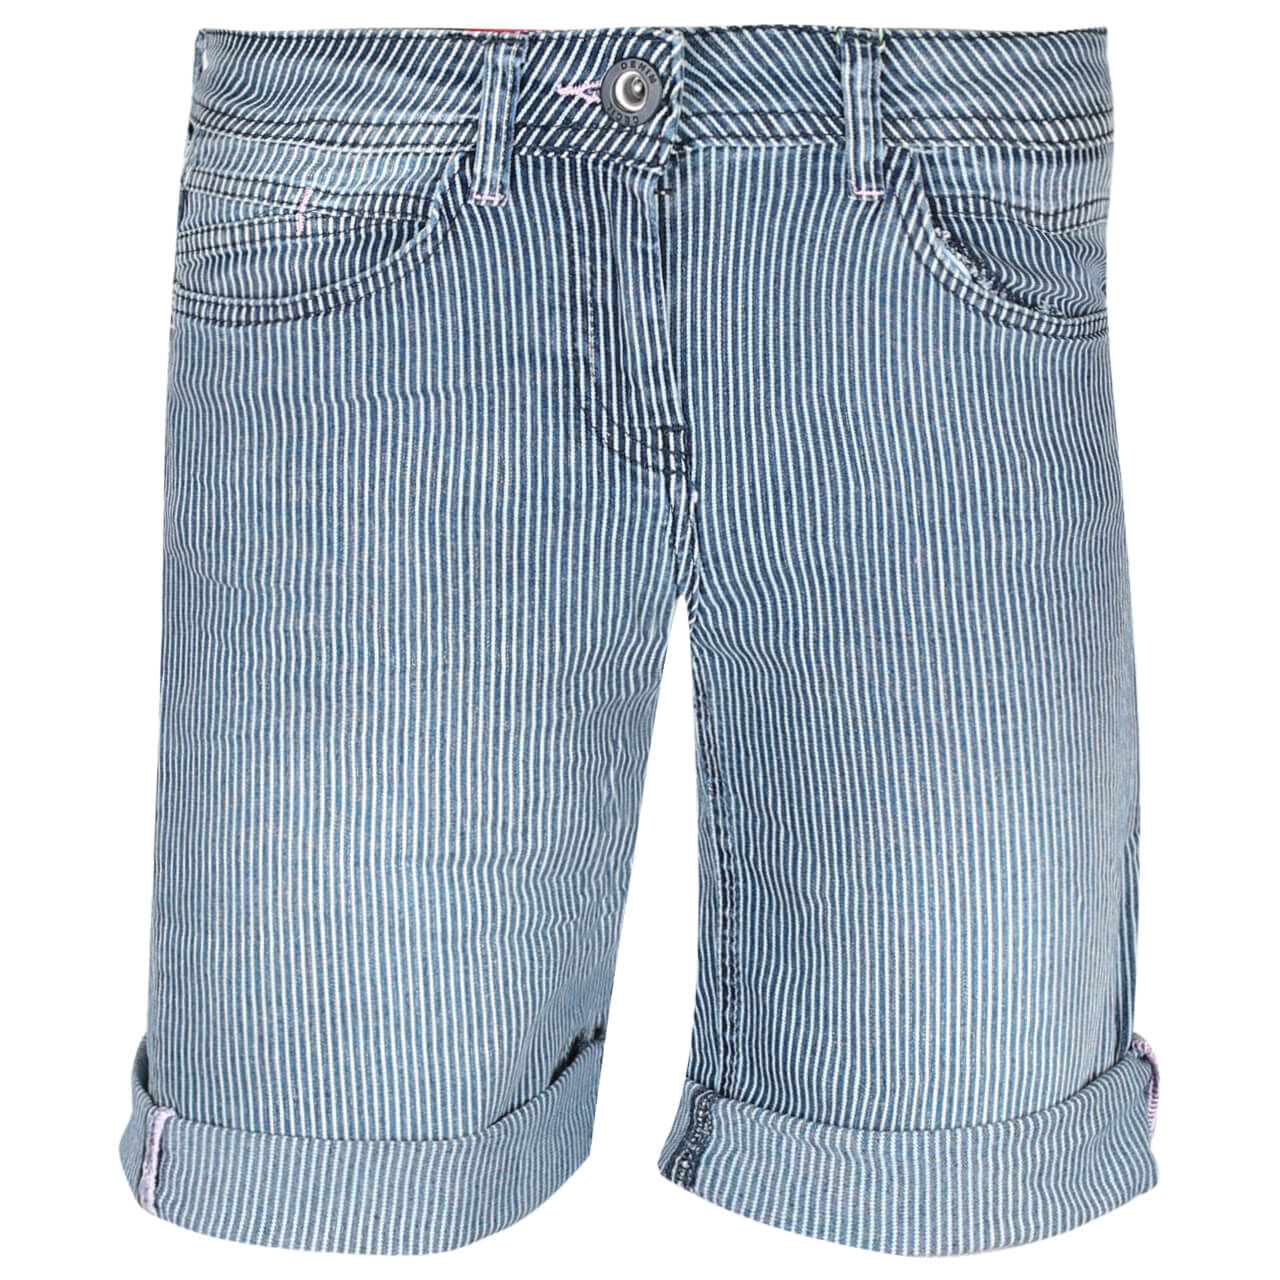 Cecil jeans scarlett - Der TOP-Favorit unter allen Produkten